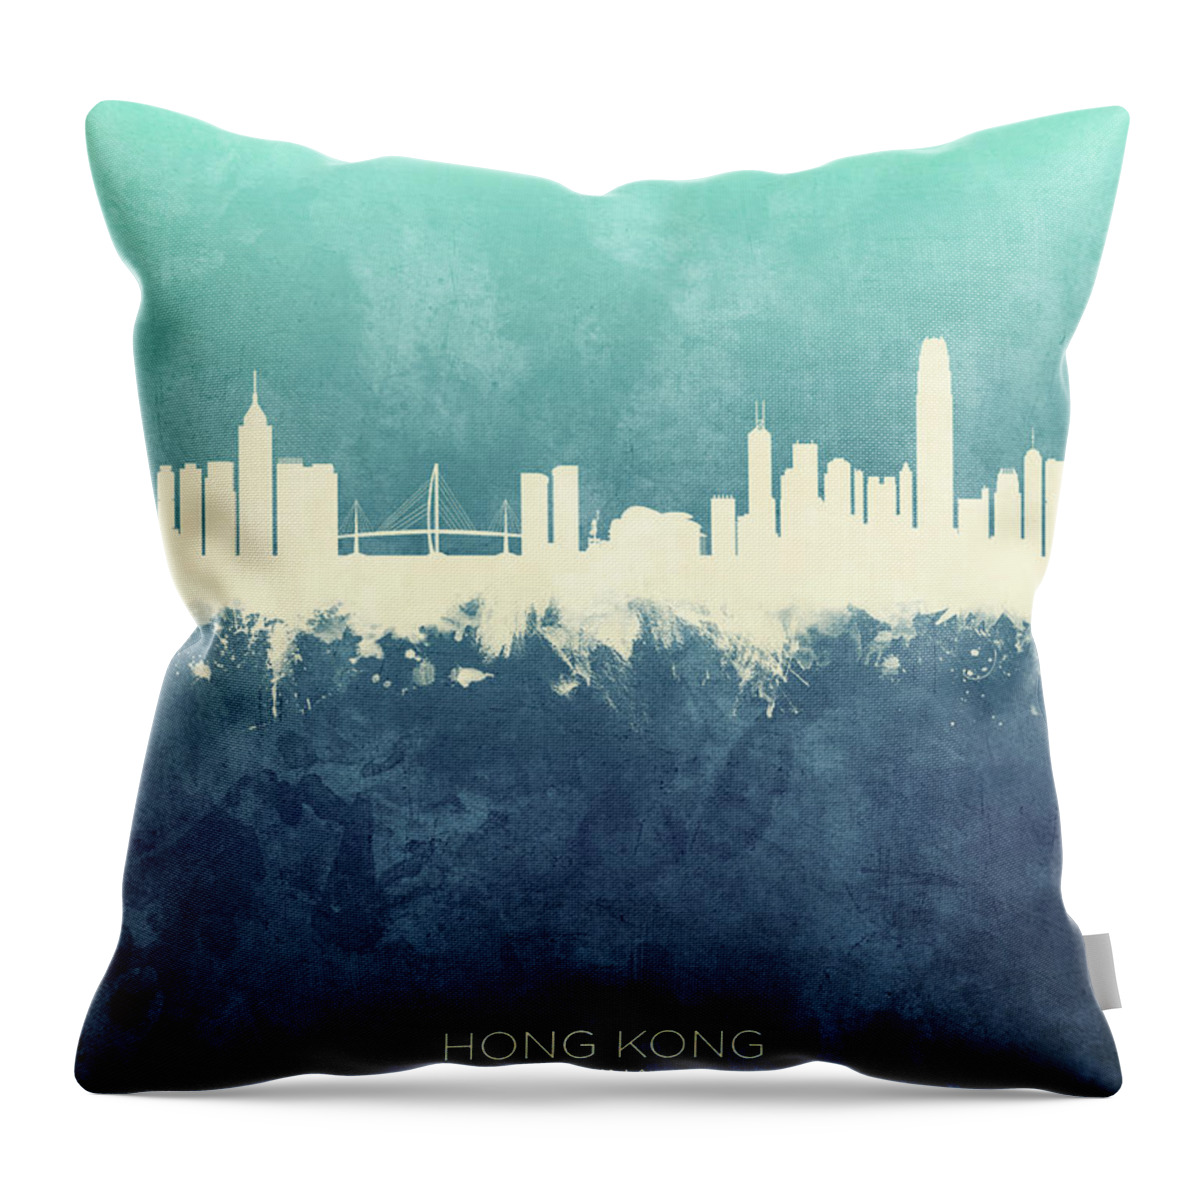 Hong Kong Throw Pillow featuring the digital art Hong Kong China Skyline by Michael Tompsett